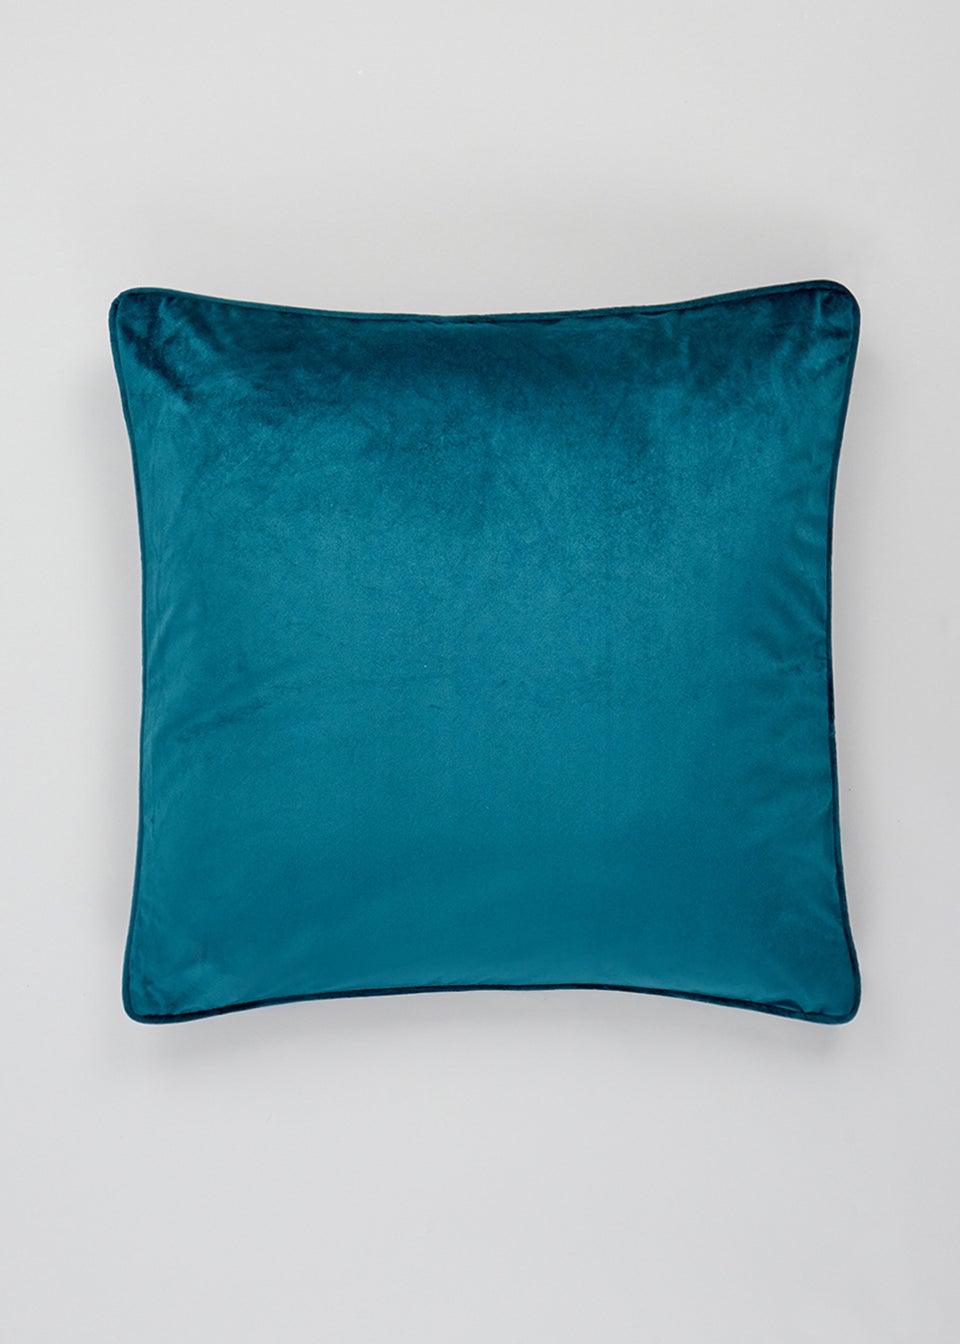 Teal Large Velvet Cushion (55cm x 55cm)